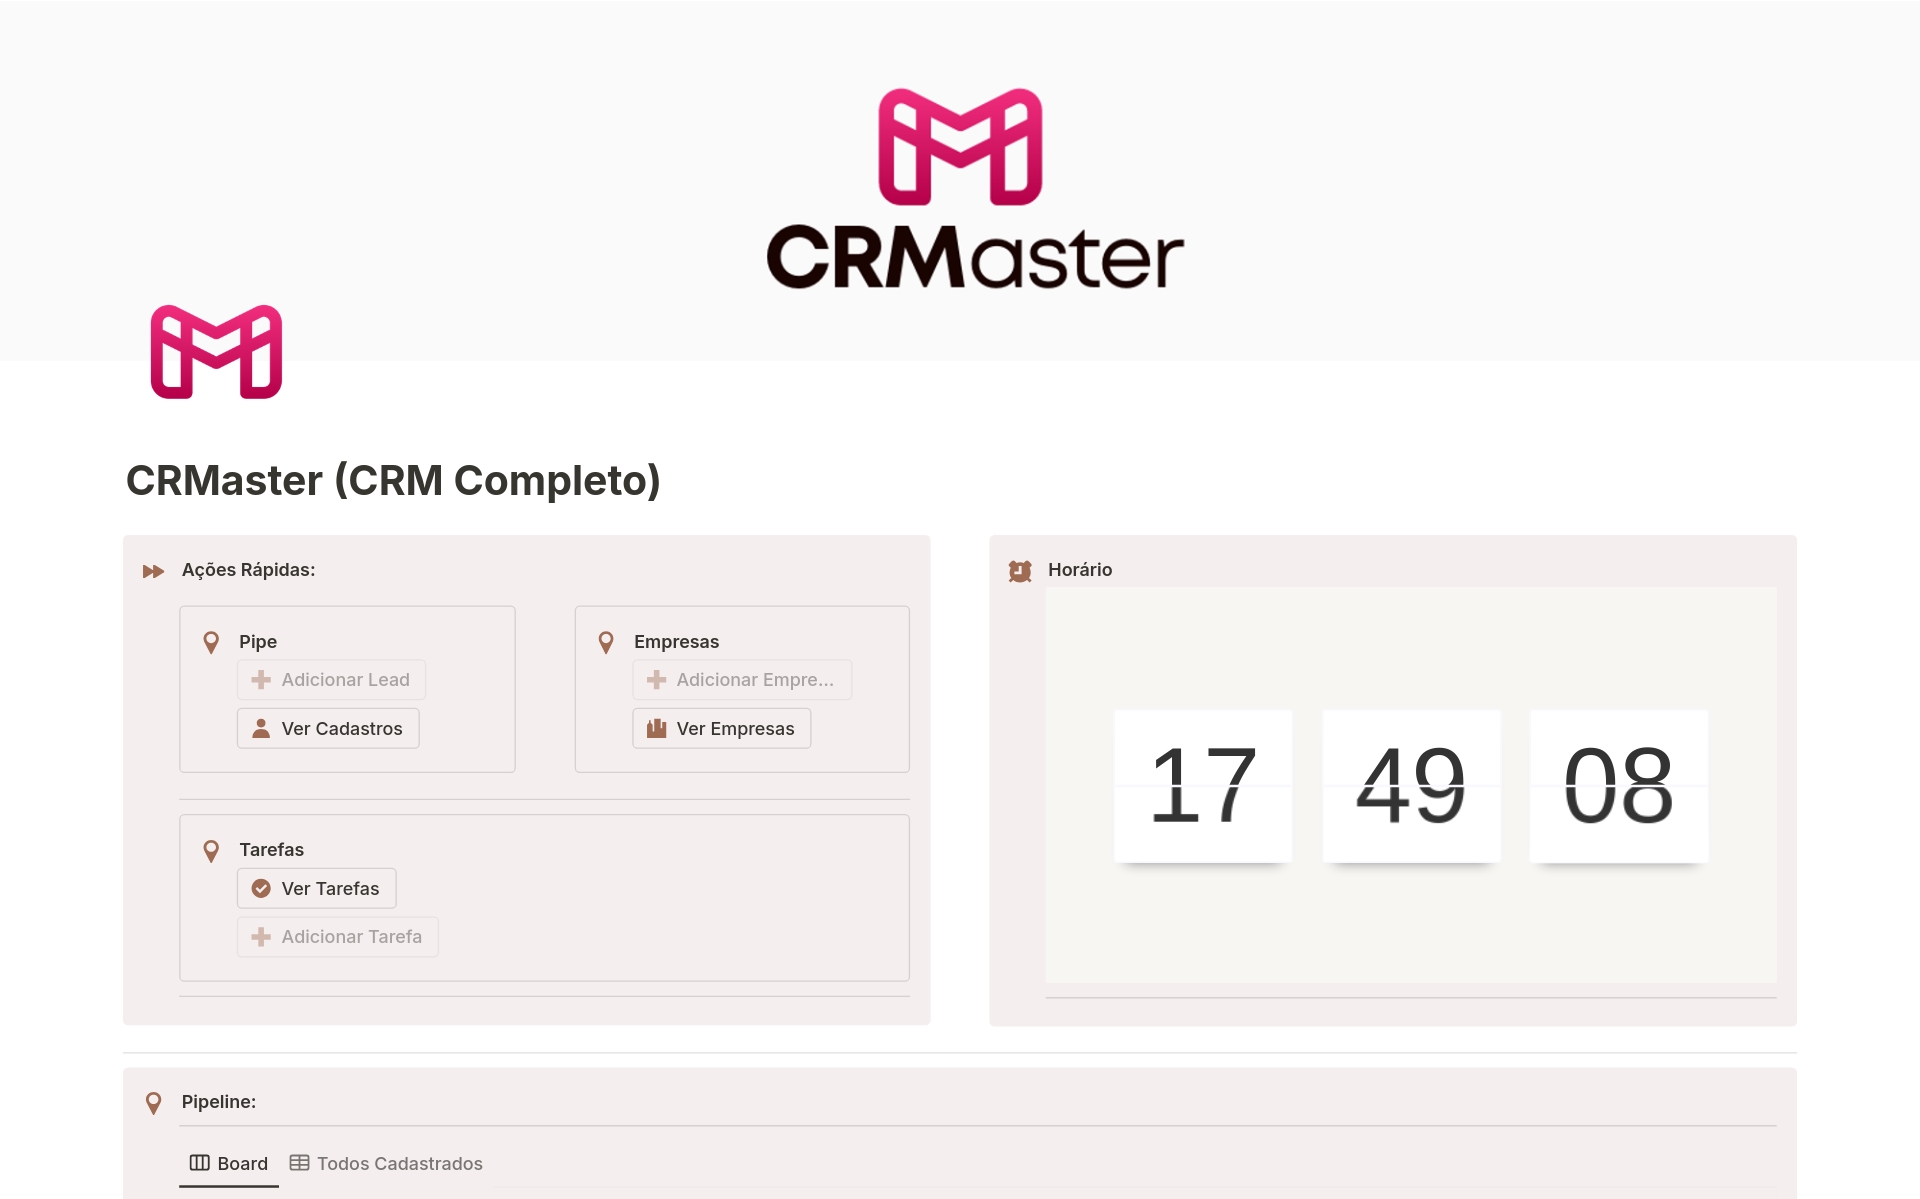 Eine Vorlagenvorschau für CRMaster - CRM Completo